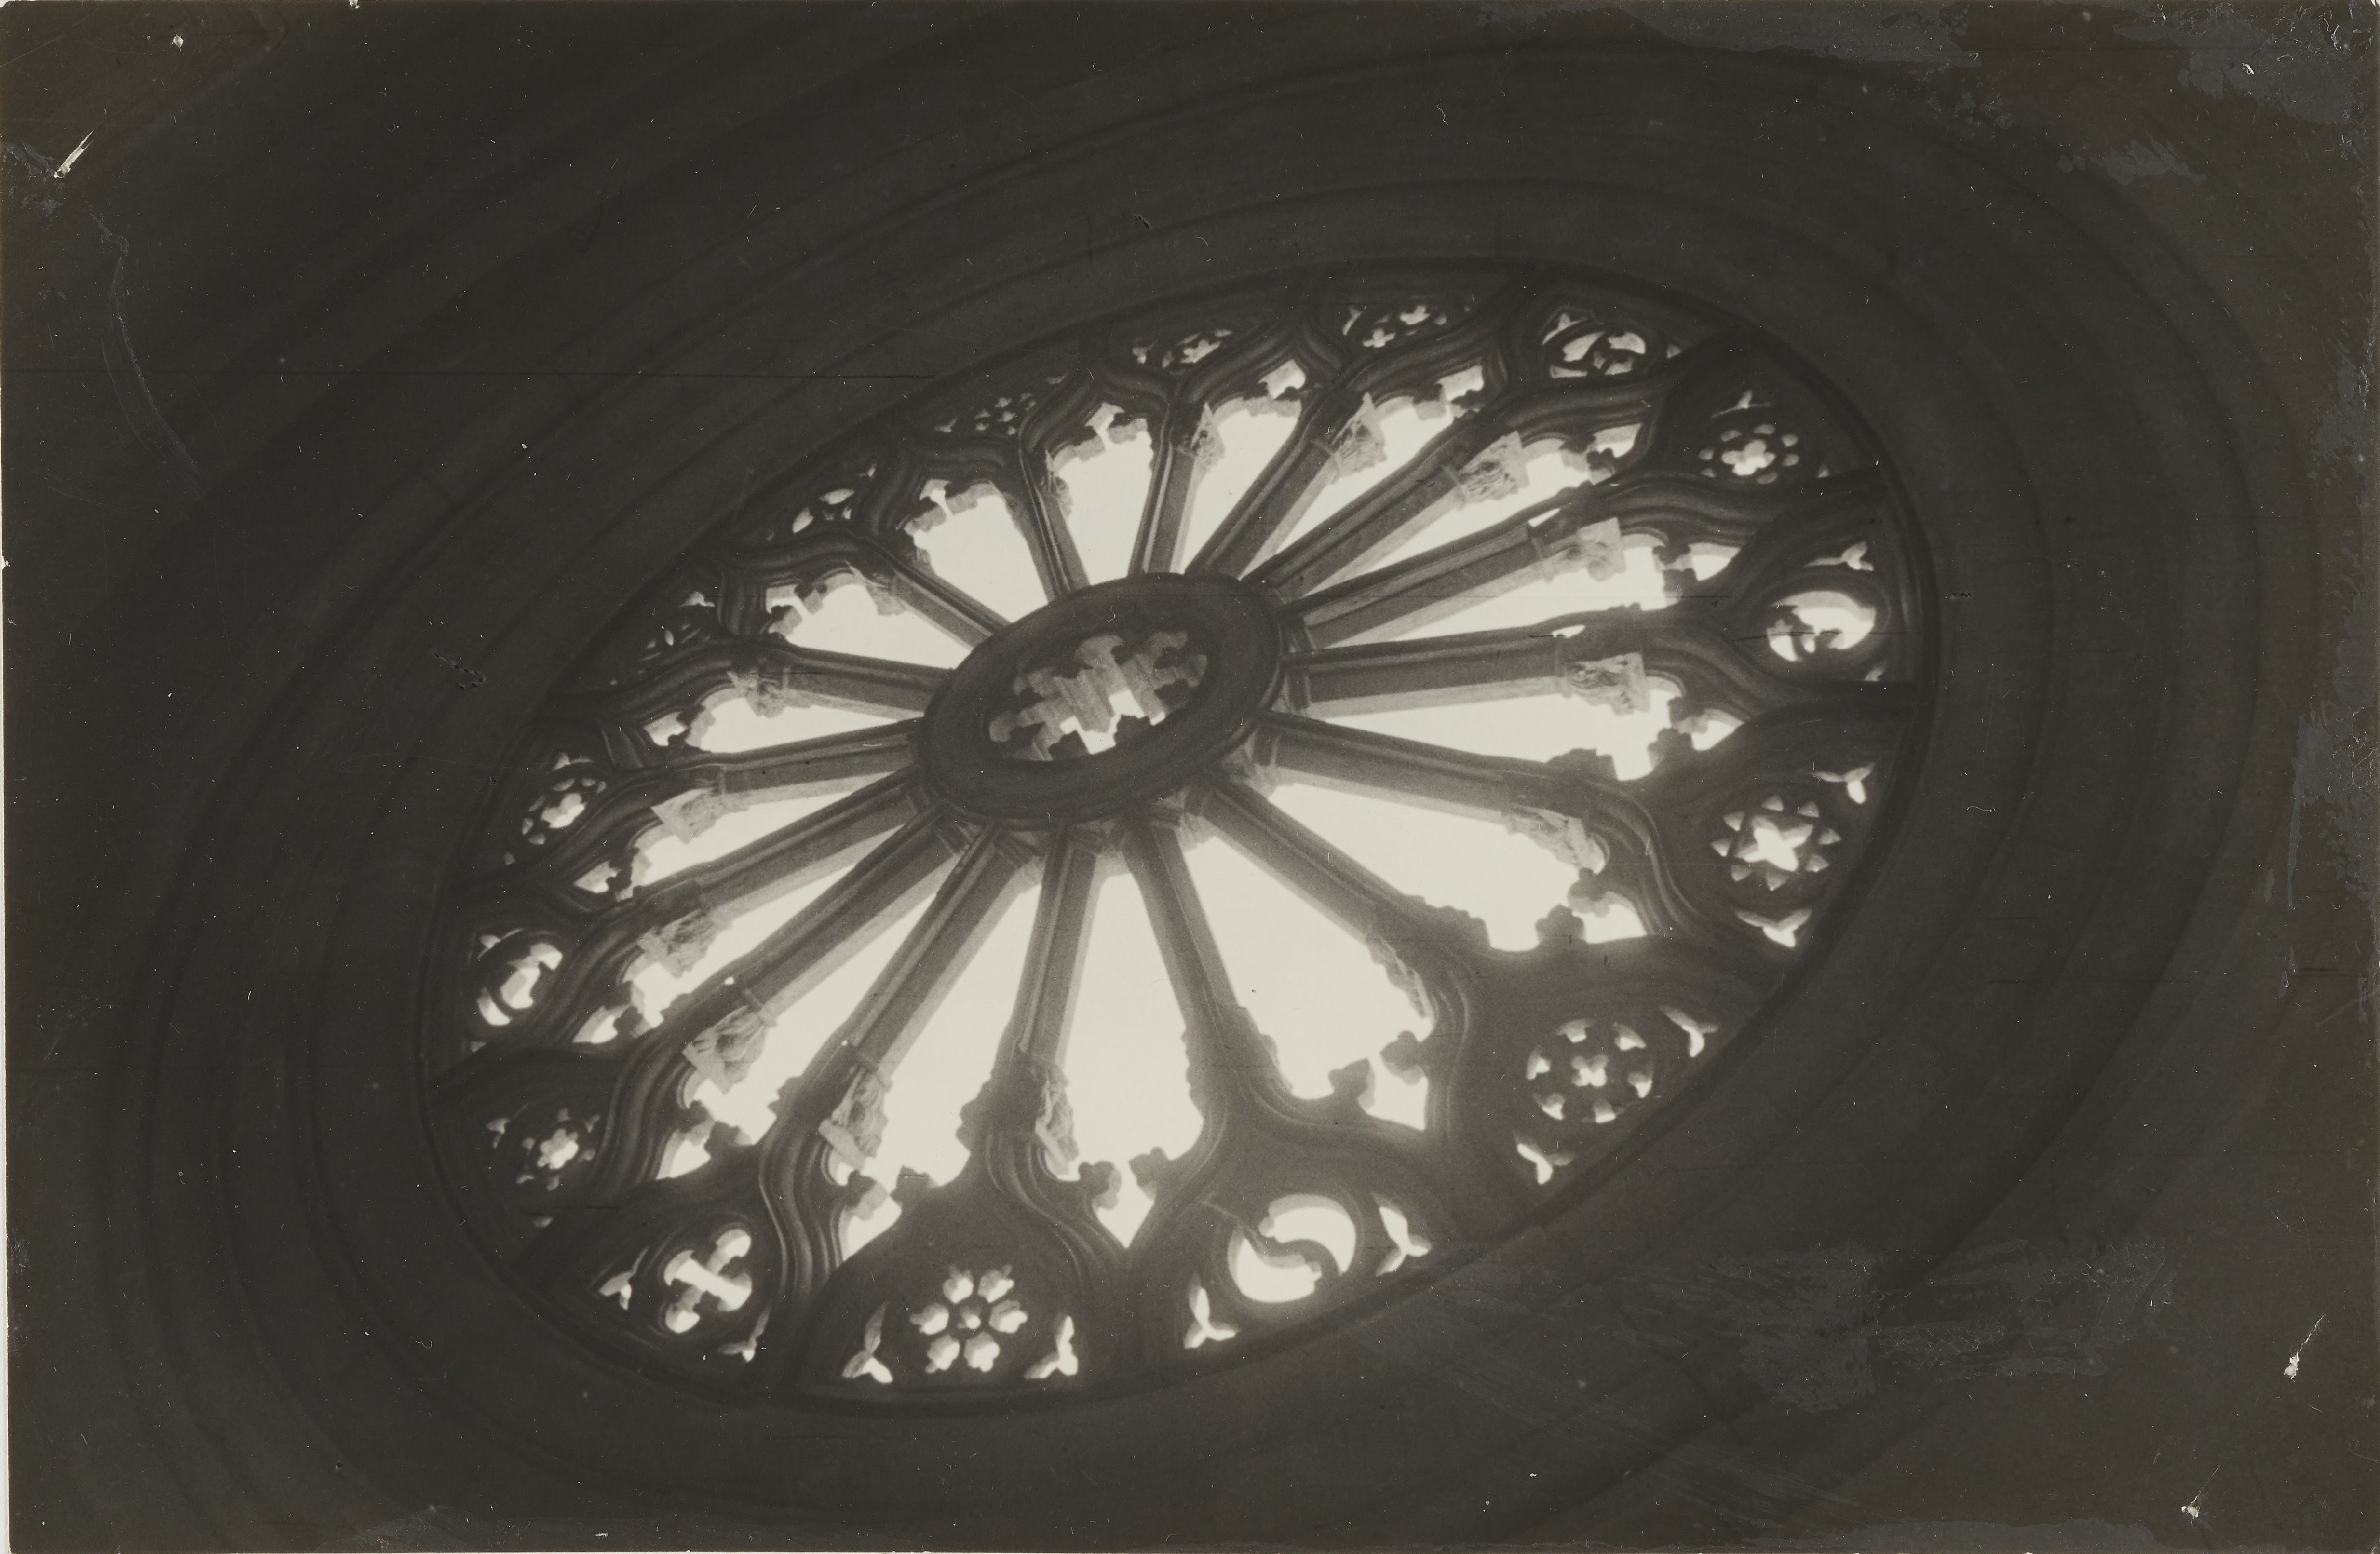 Autore non identificato, Cosenza - Chiesa di S. Domenico, rosone dopo il restauro, gelatina ai sali d'argento, MPI156163